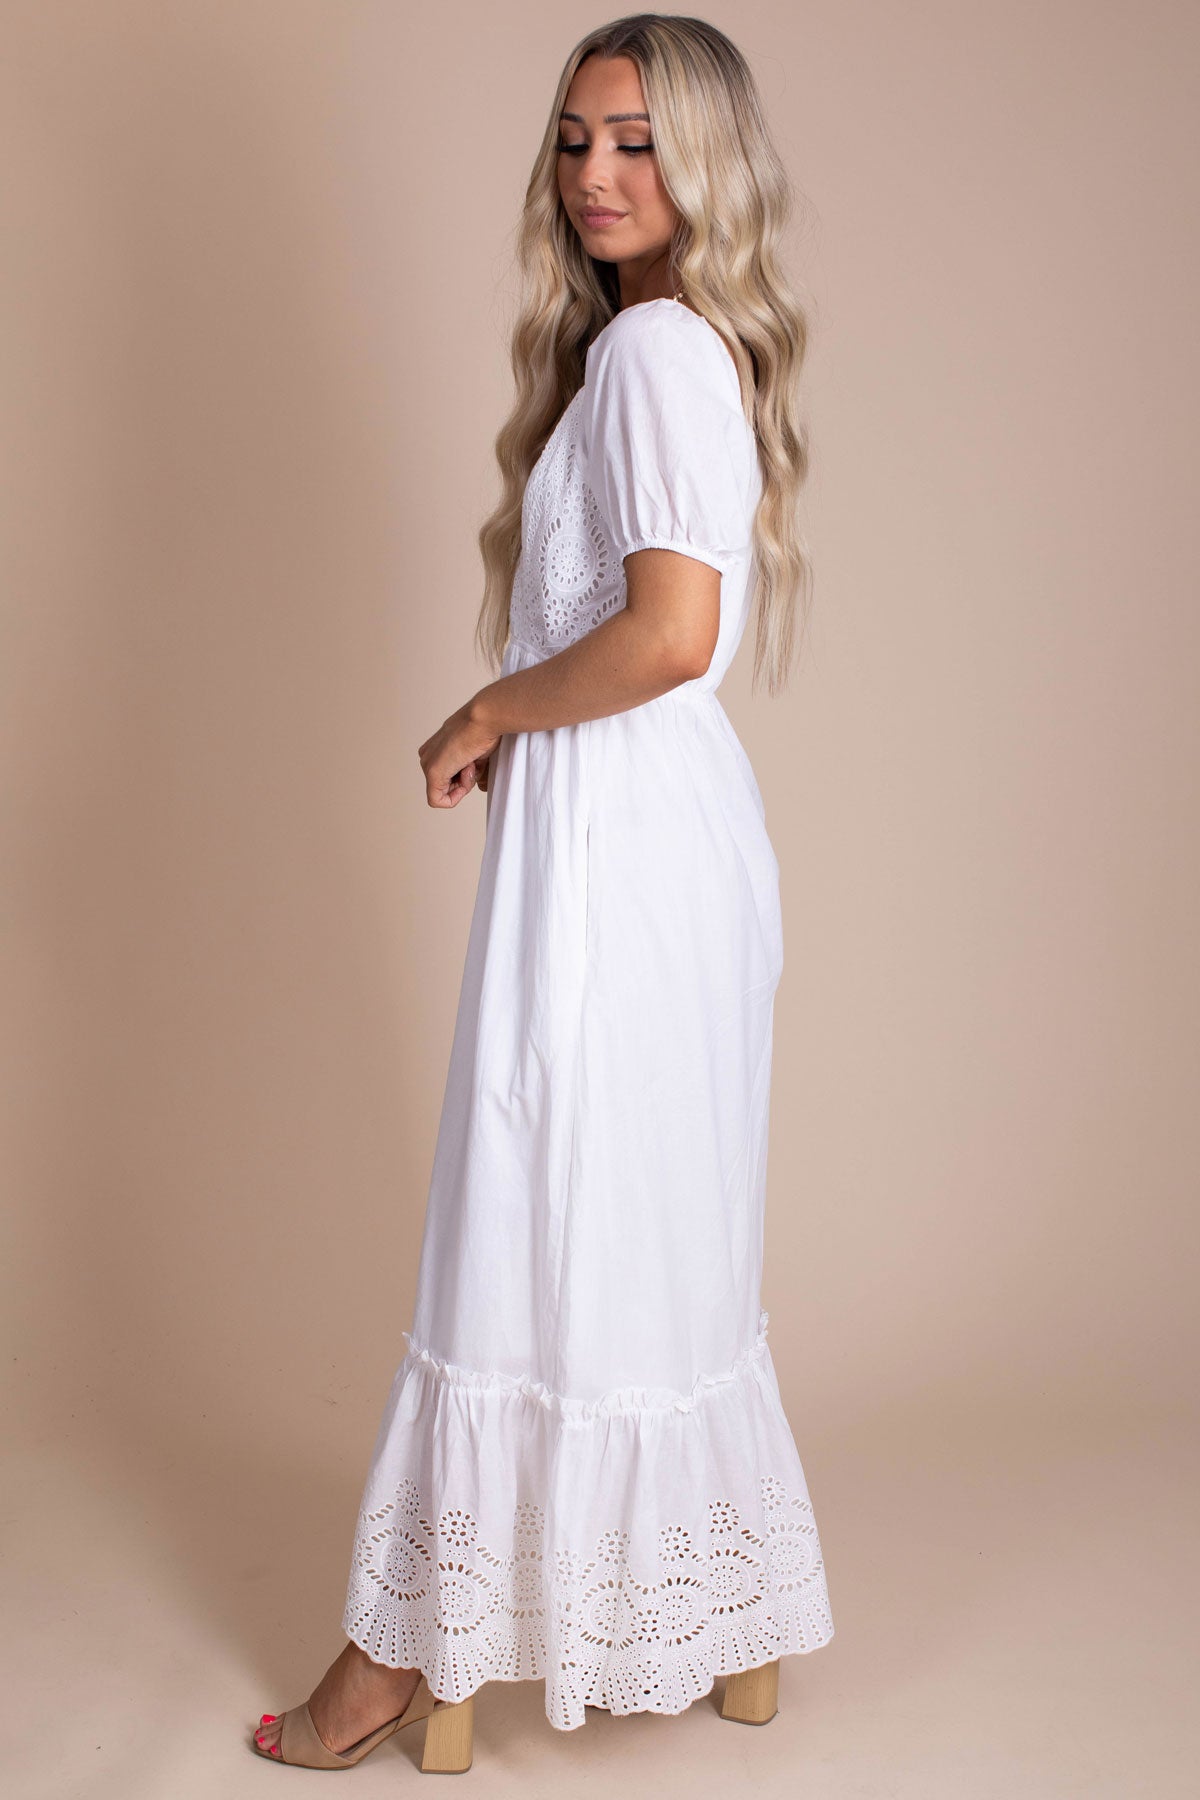 Boutique White Dresses